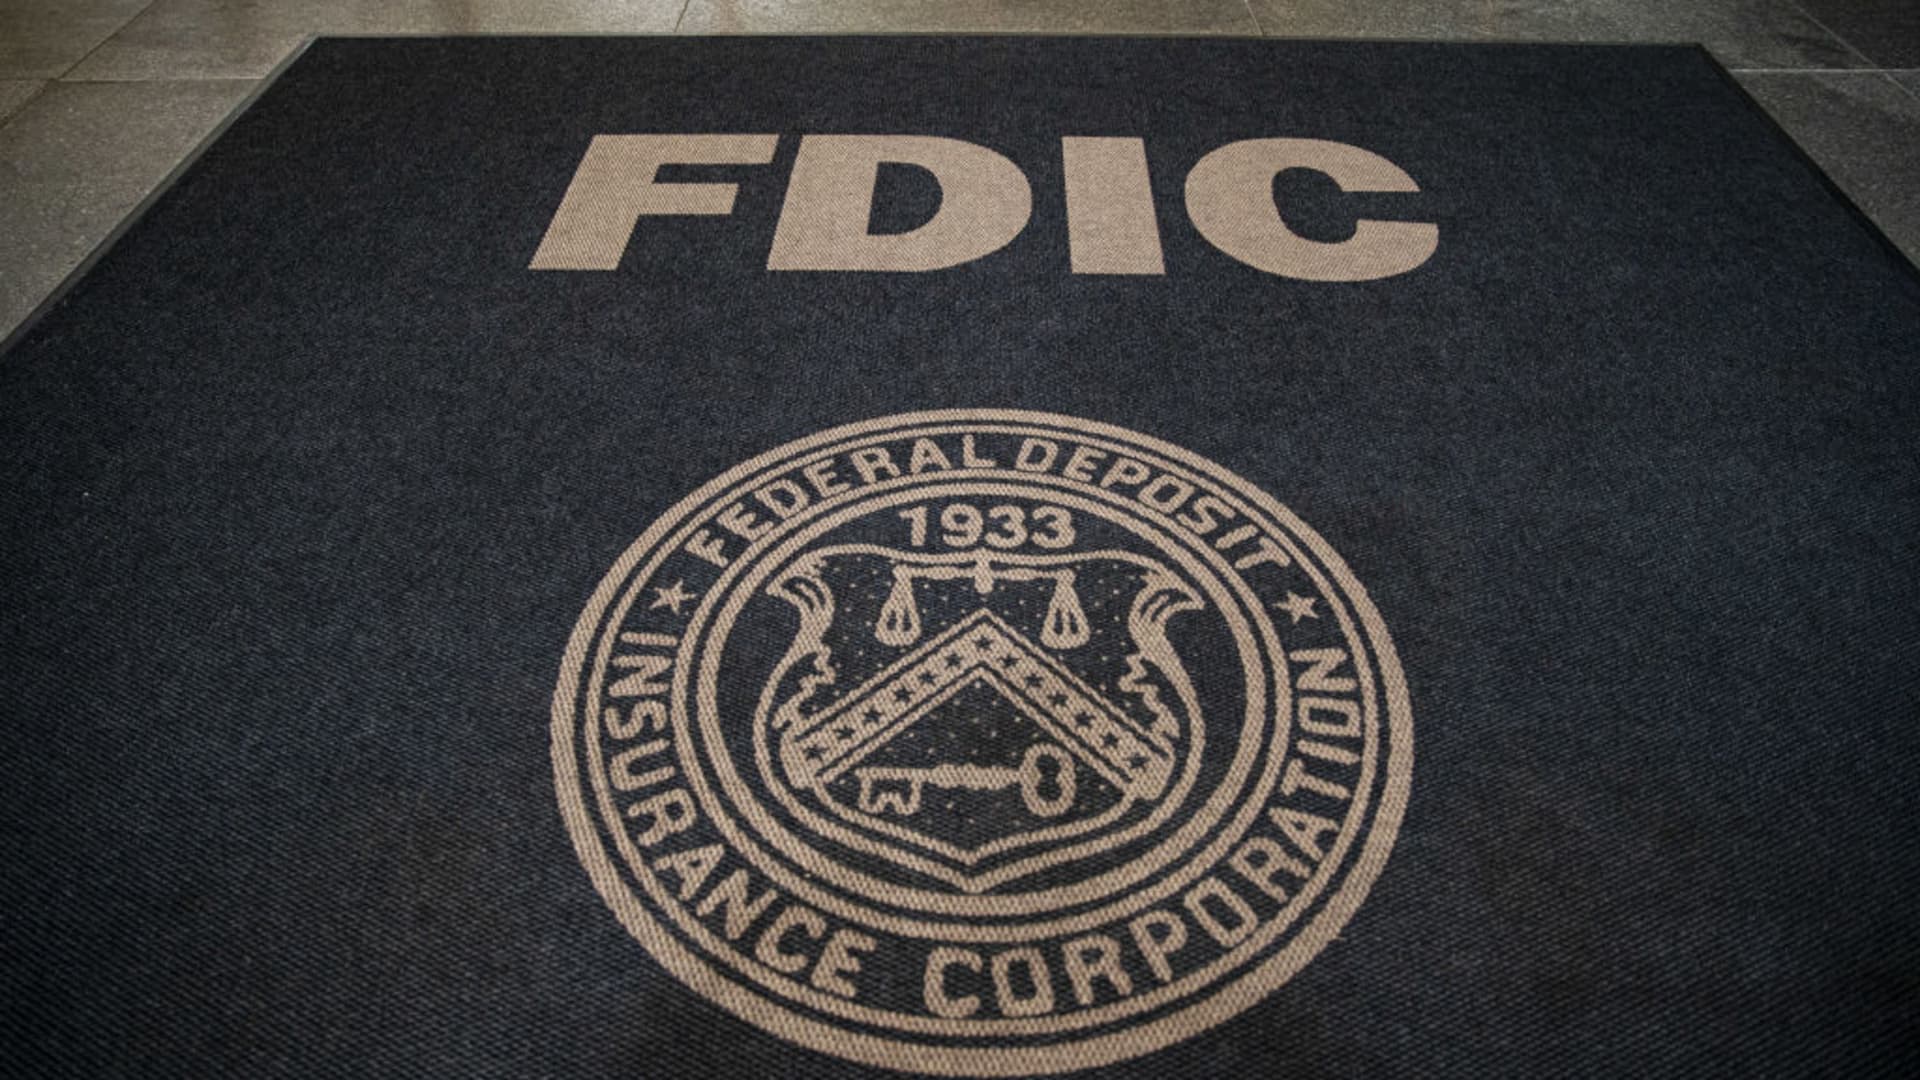 U.S. lawmakers to examine merits of higher FDIC bank deposit